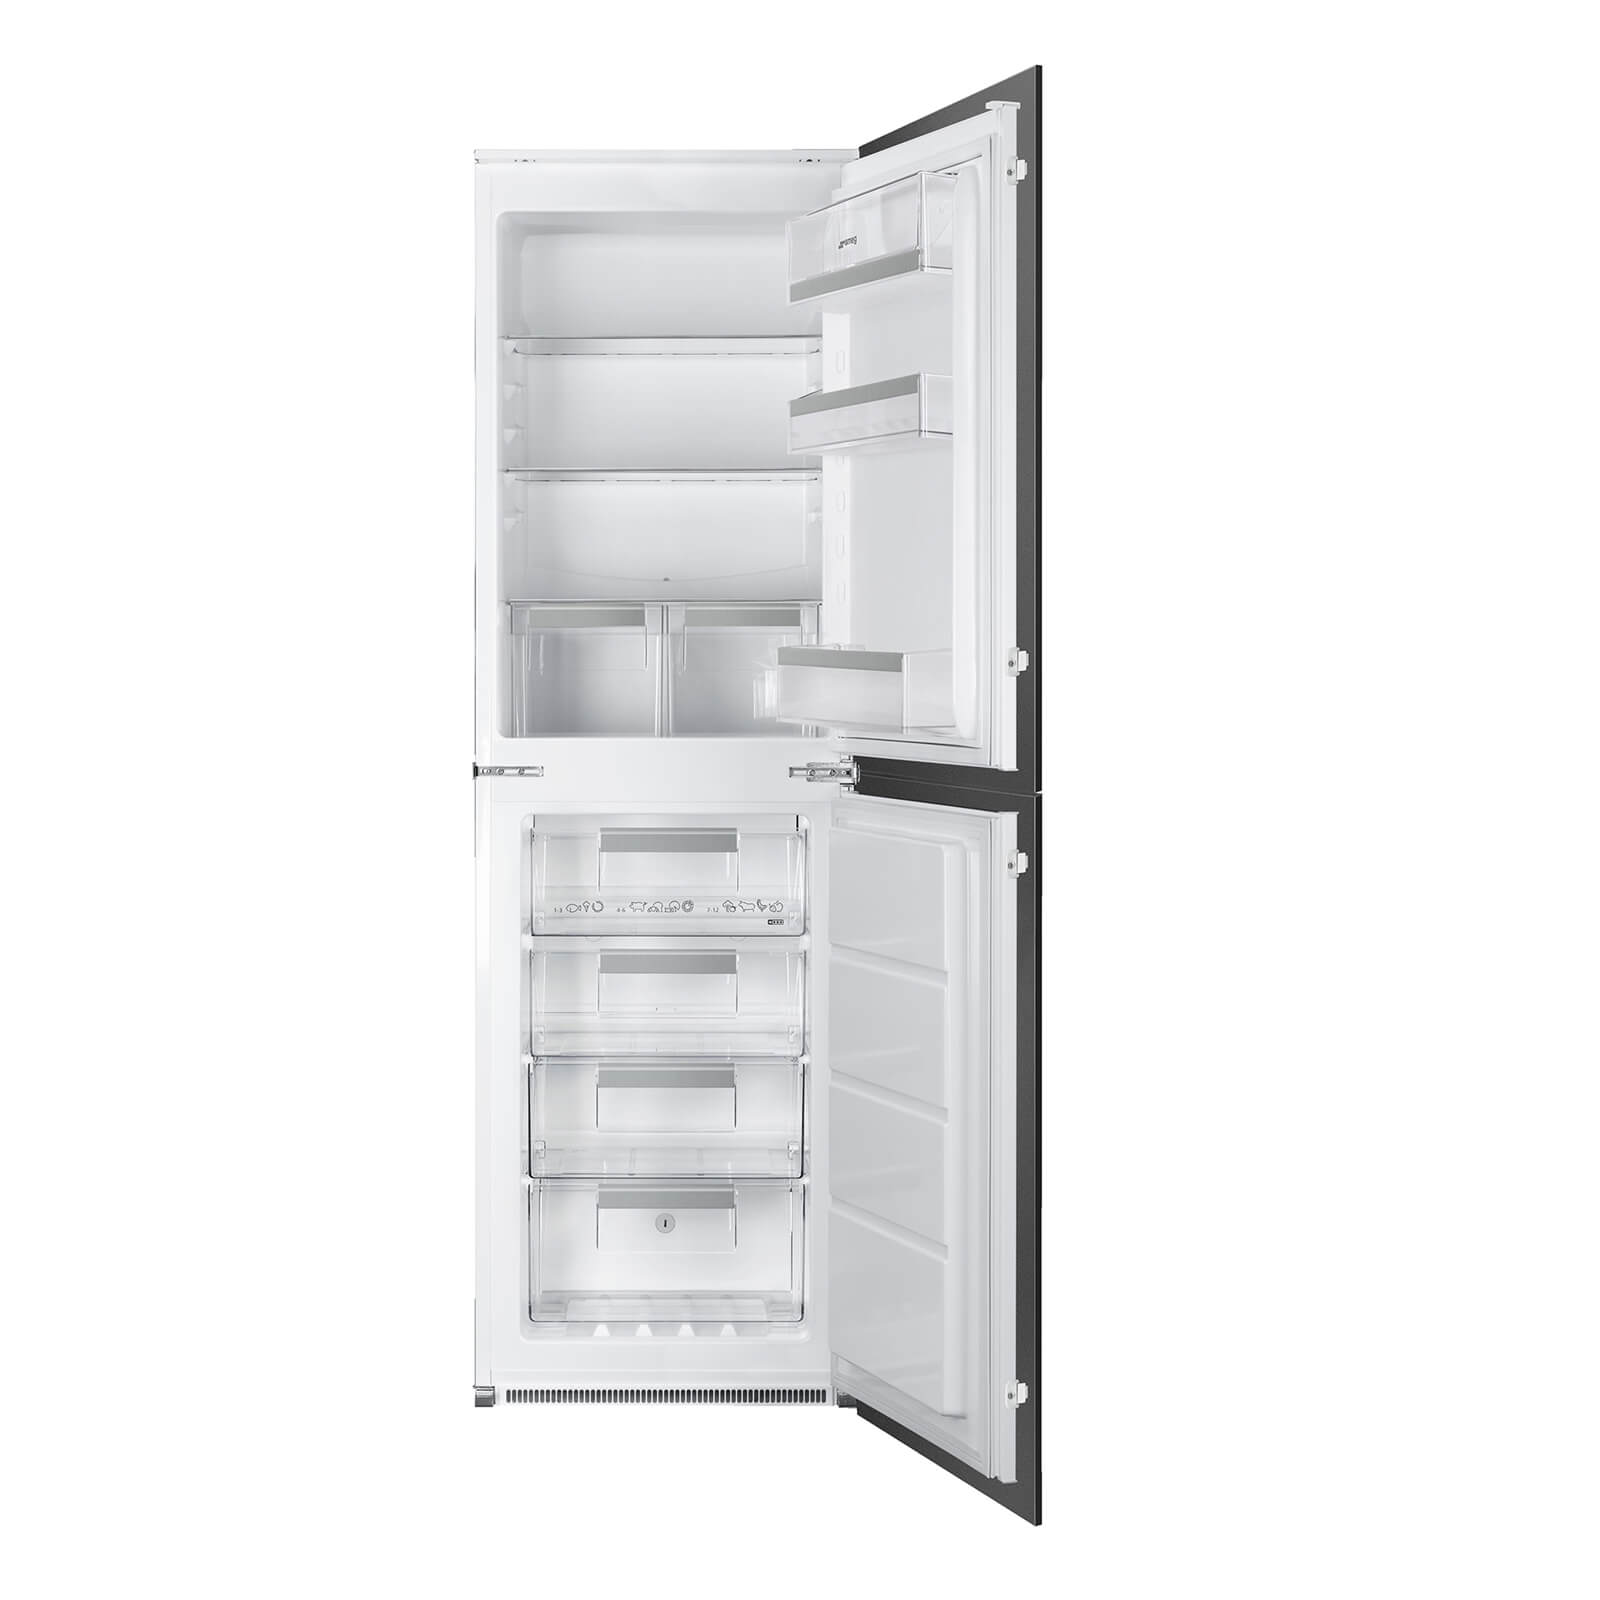 Smeg UKC7172NP1 Integrated Fridge Freezer - White